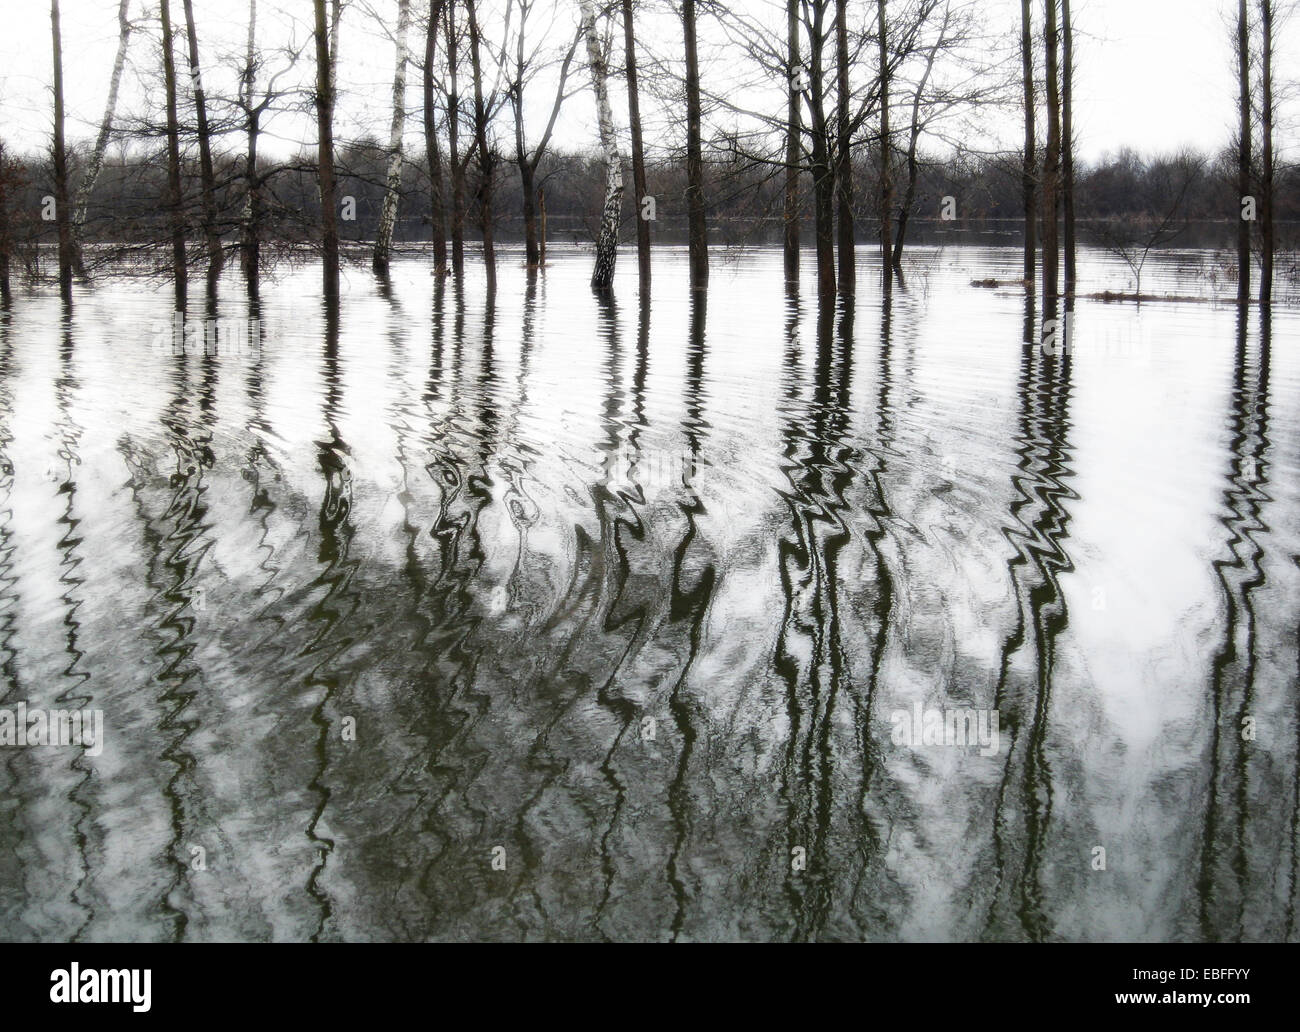 Bianco e nero still life fotografia di paesaggio inondato Foto Stock